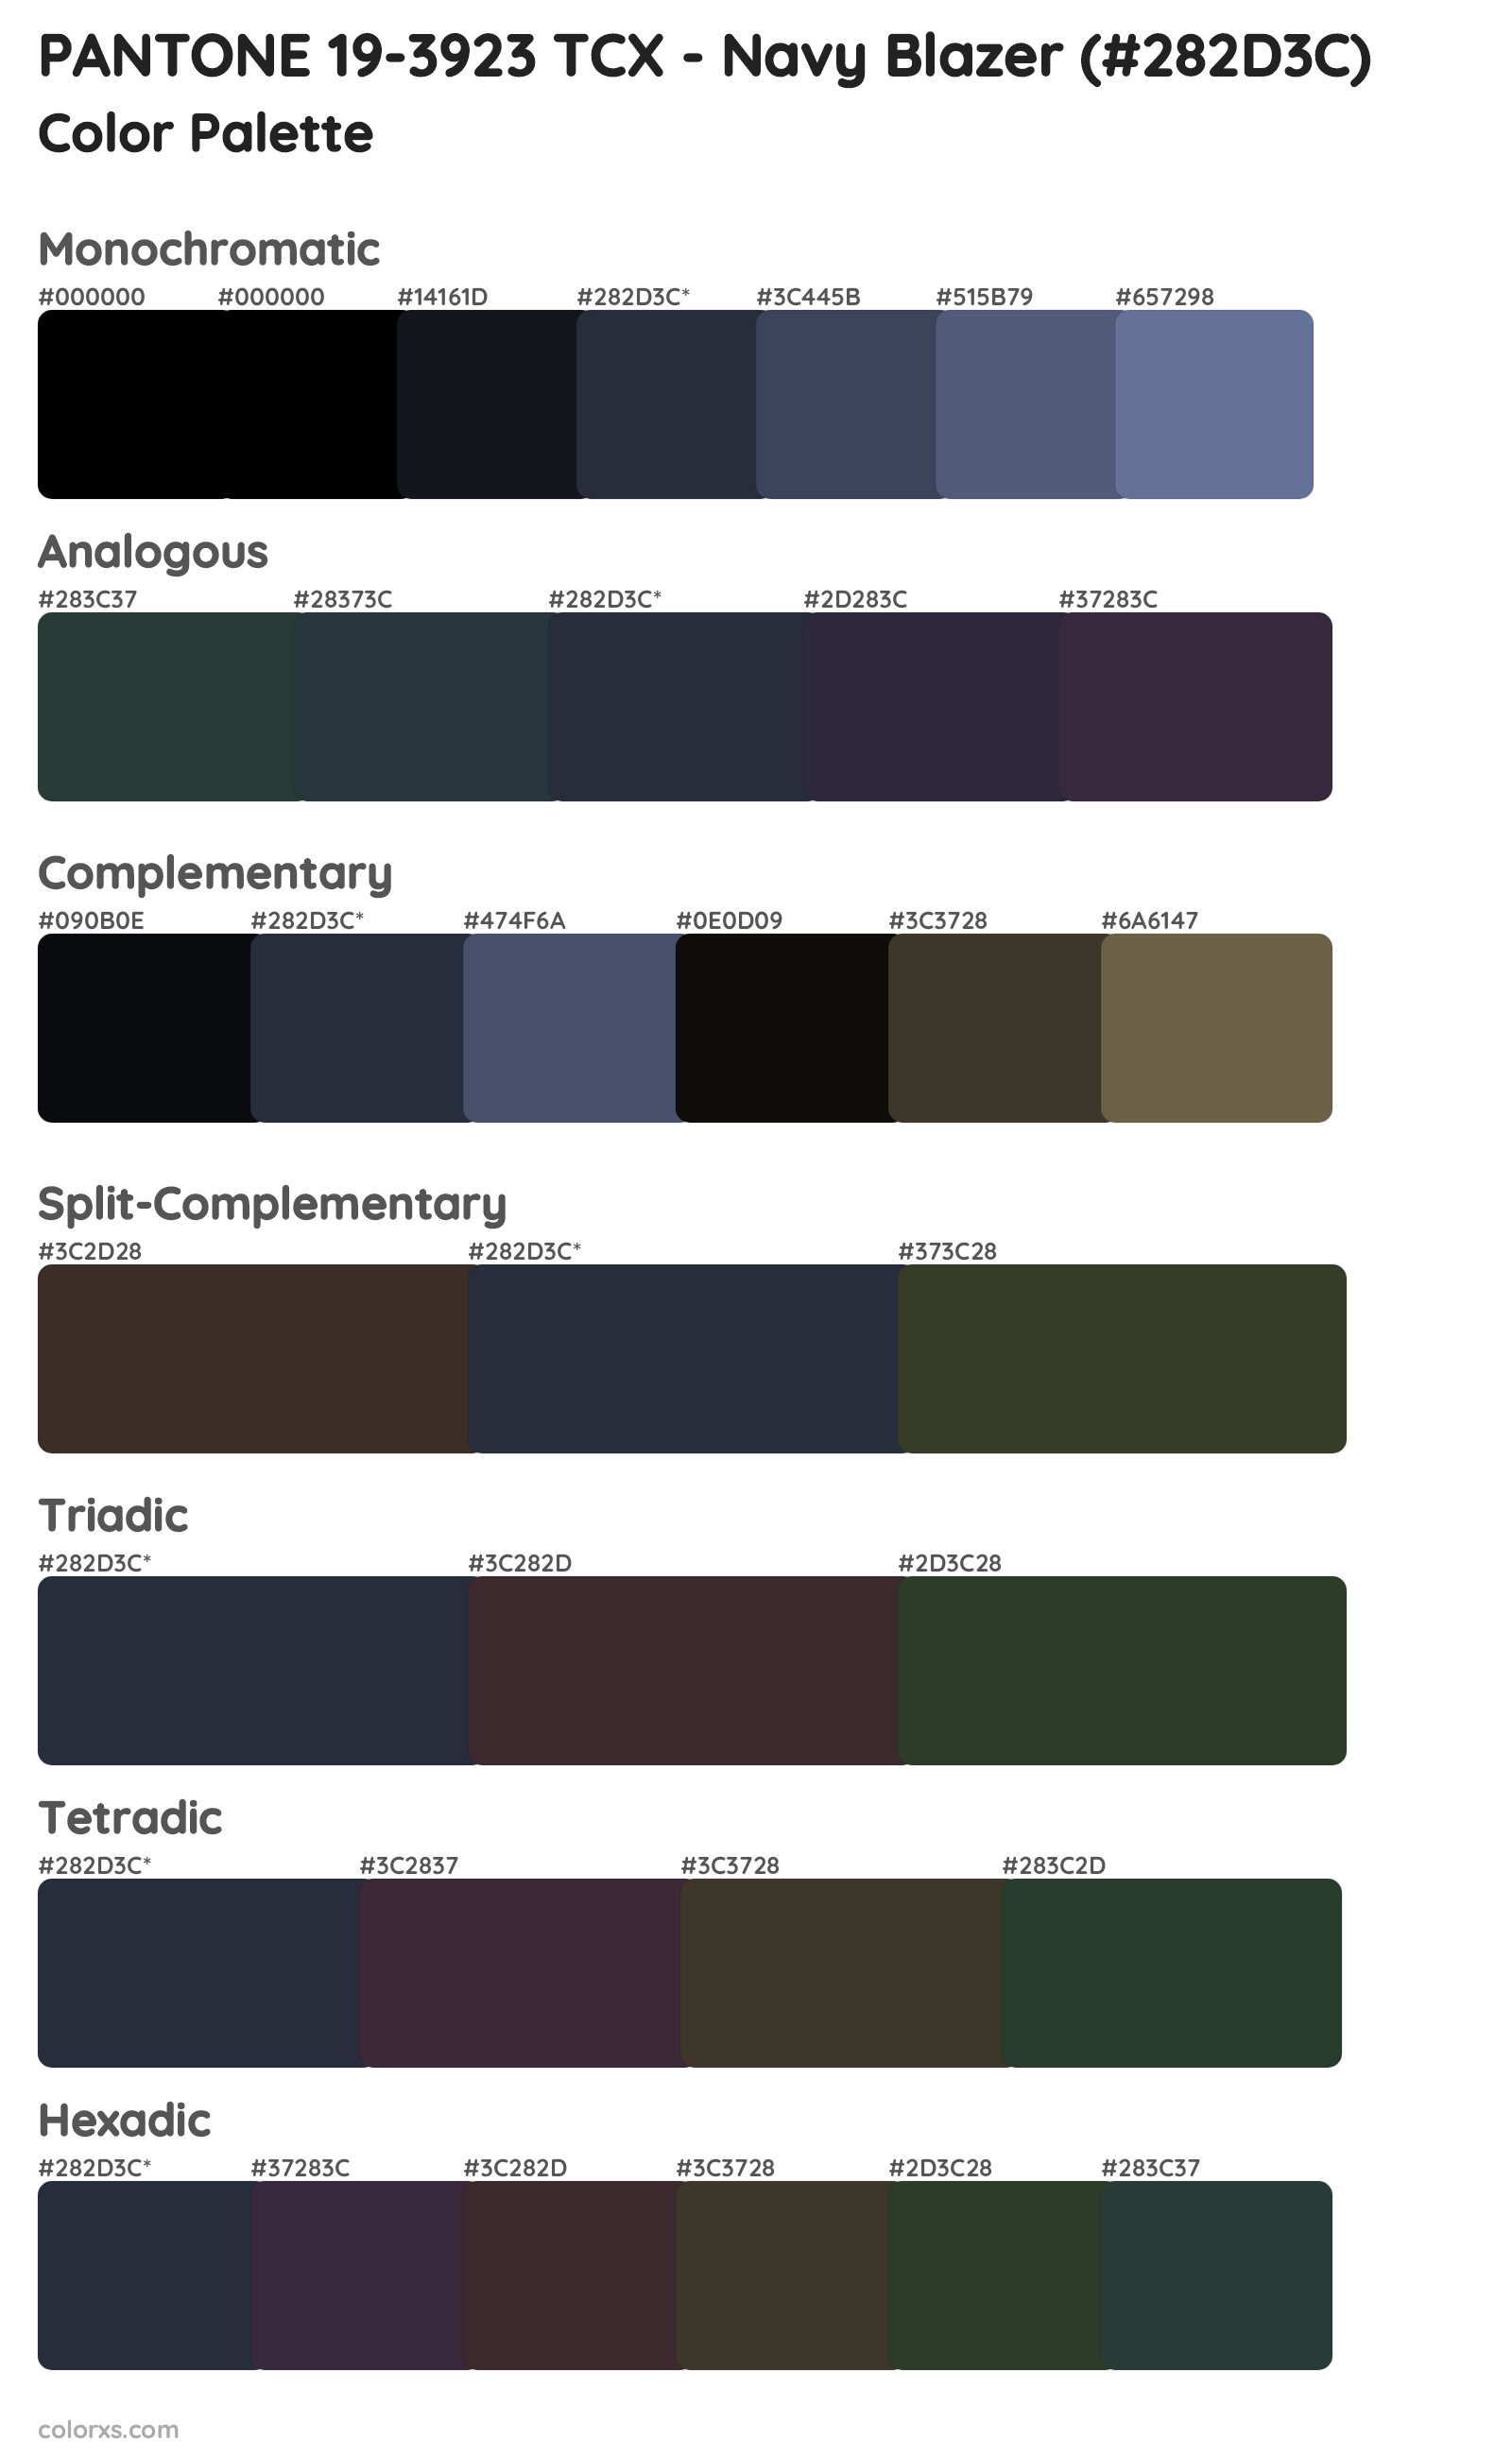 PANTONE 19-3923 TCX - Navy Blazer Color Scheme Palettes